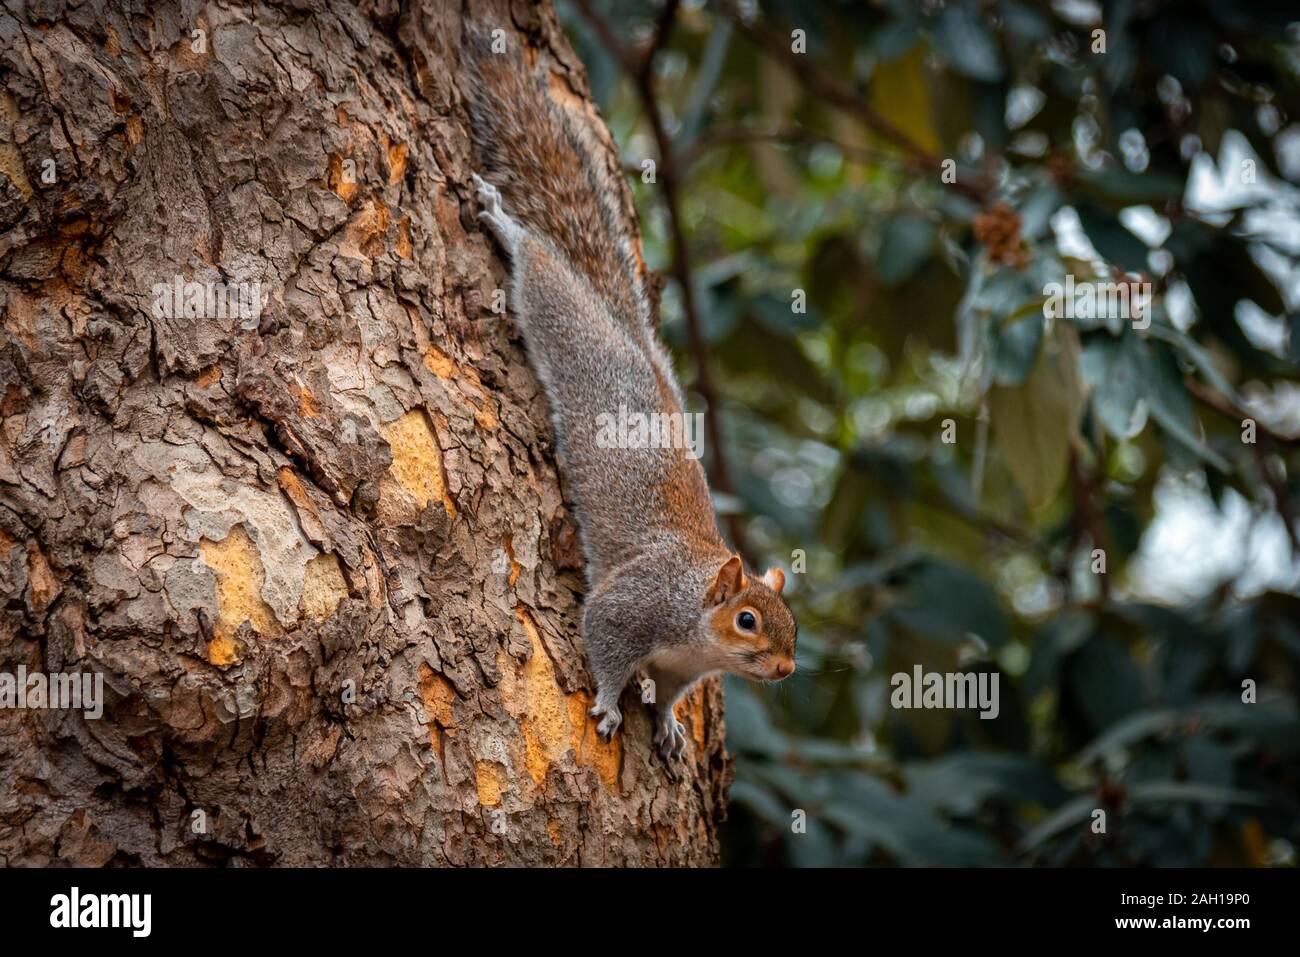 Drôle et adorable écureuil grimper sur un arbre alors que la recherche de nourriture. Banque D'Images